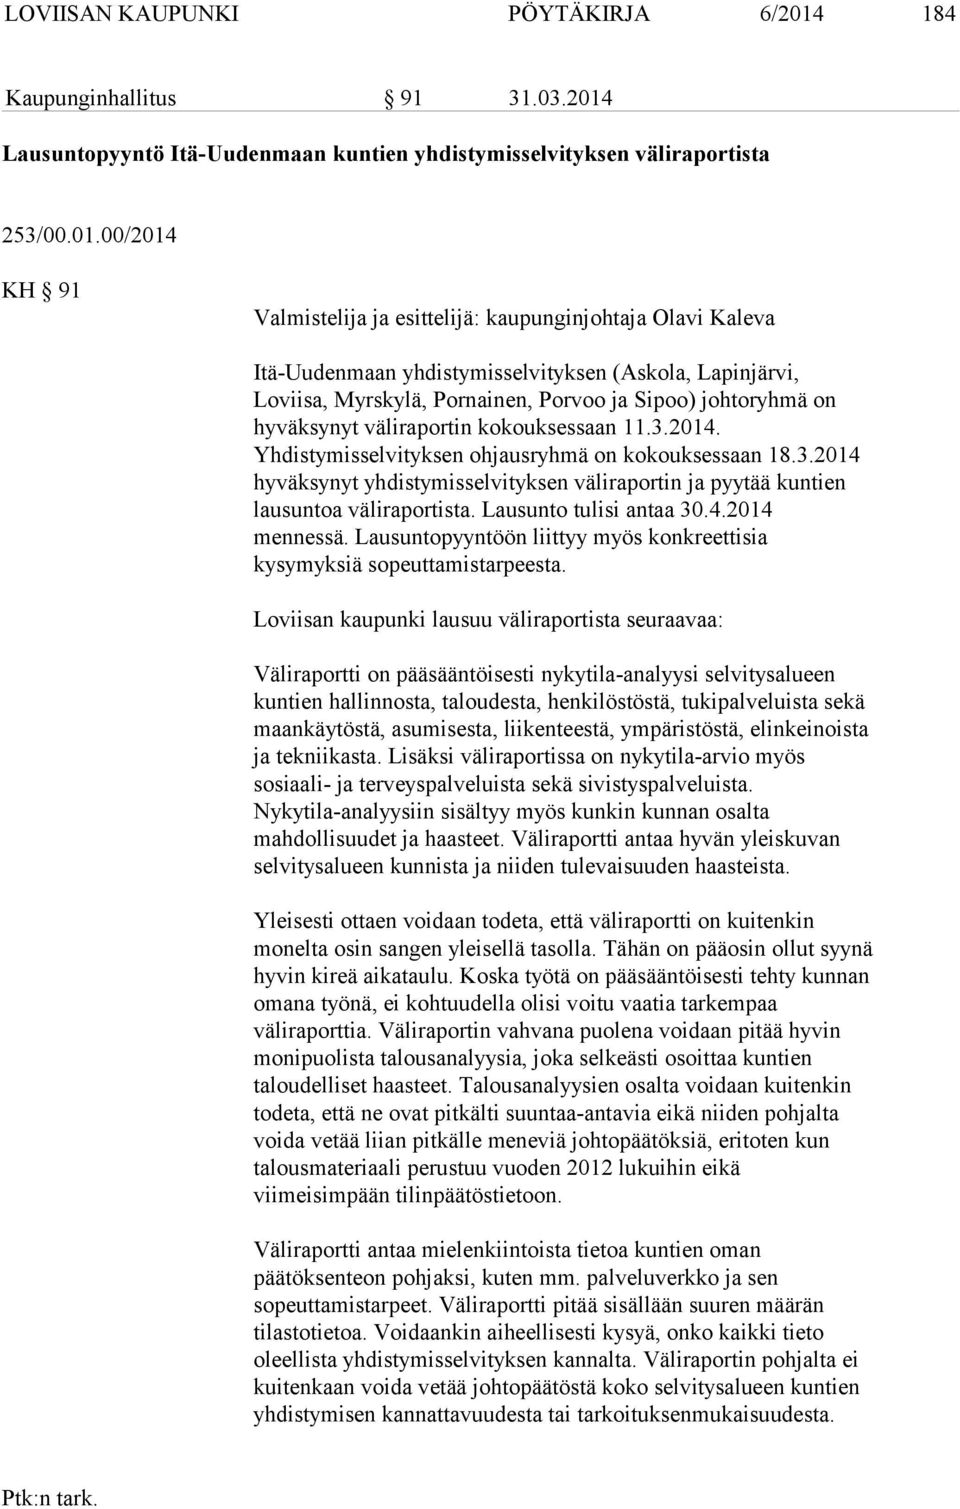 Lausuntopyyntö Itä-Uudenmaan kuntien yhdistymisselvityksen väliraportista 253/00.01.